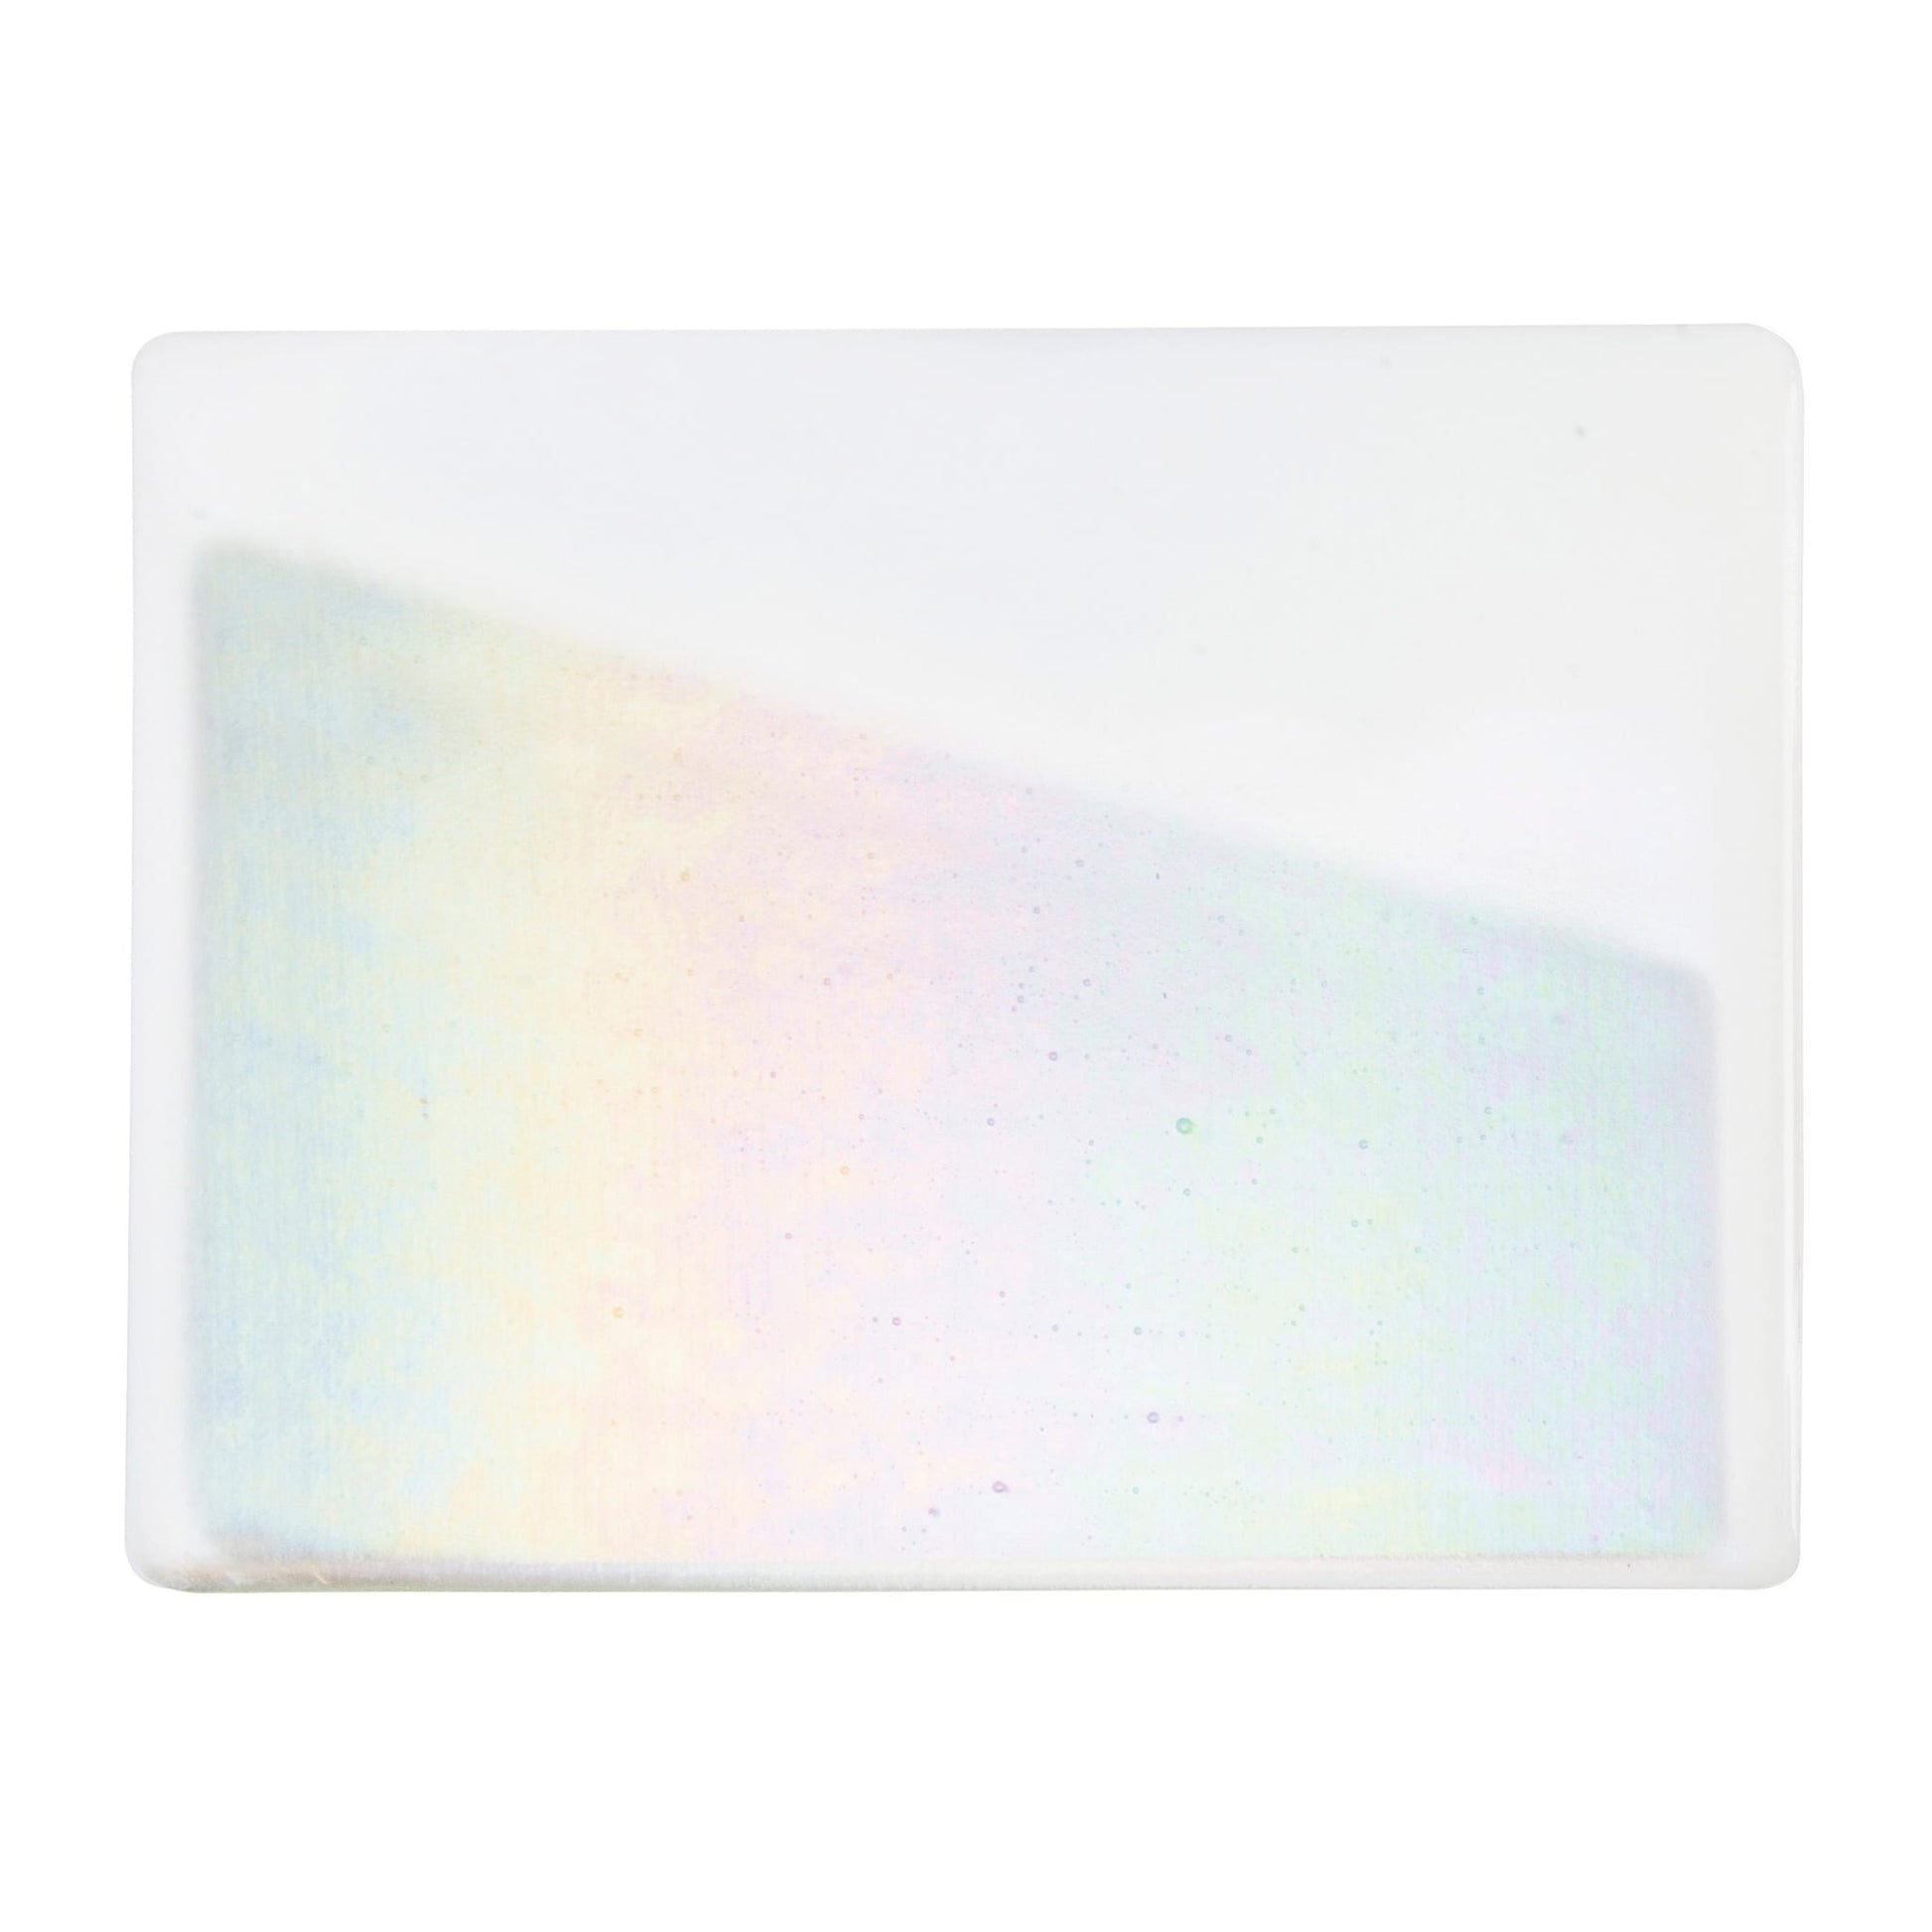 Bullseye COE90 Fusing Glass 000113 White, Iridescent, Rainbow Full Sheet